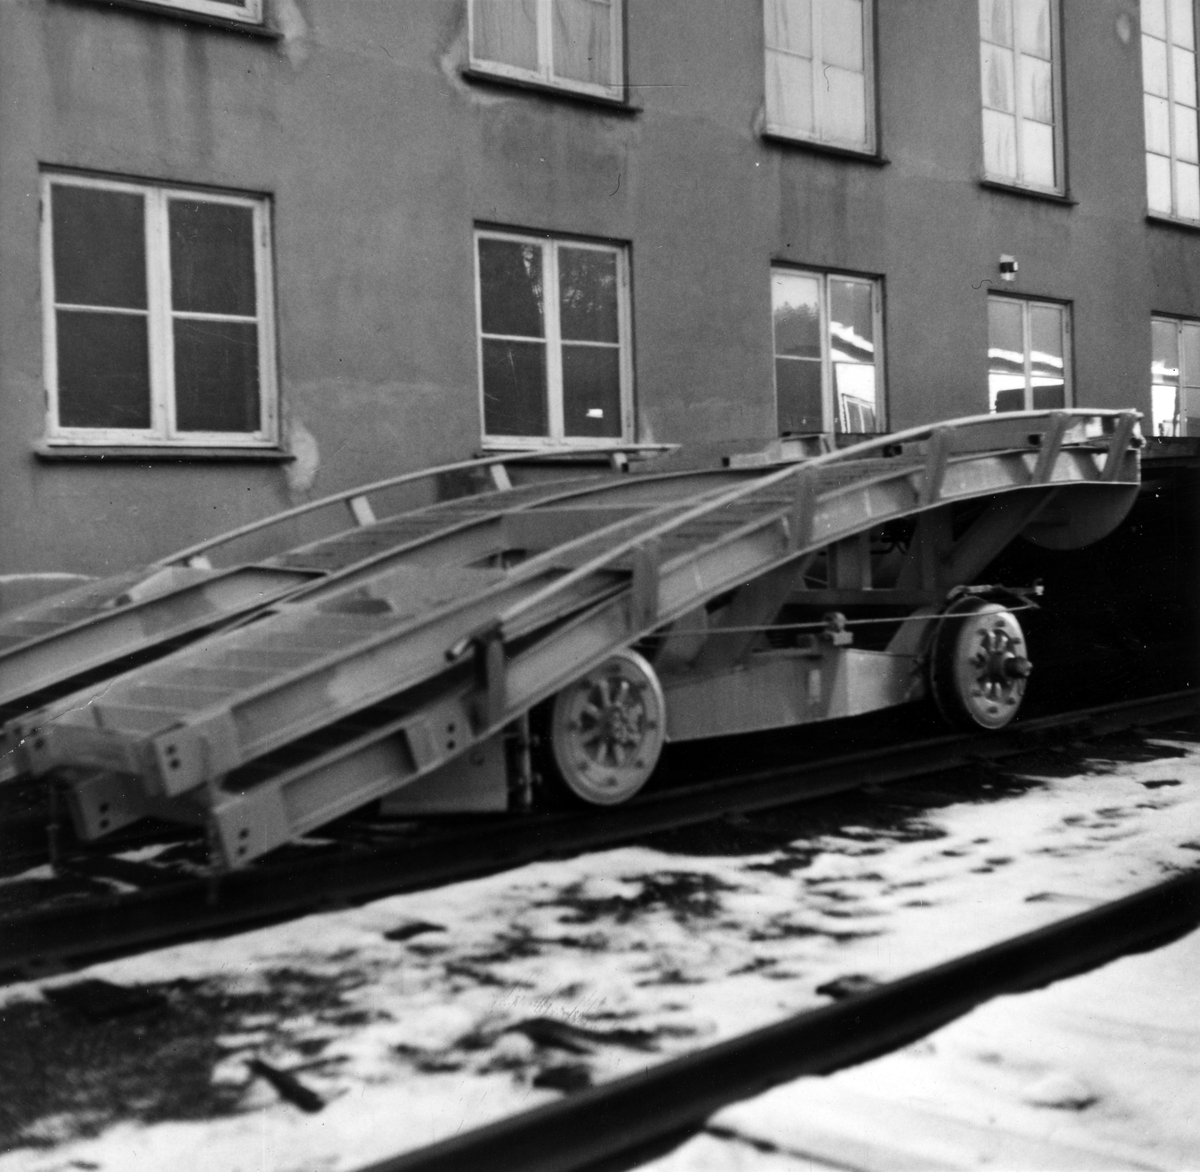 Krossen jernbaneverksted. Kjørerampe, boggi fra type 87.
Datert 05. februar 1971.